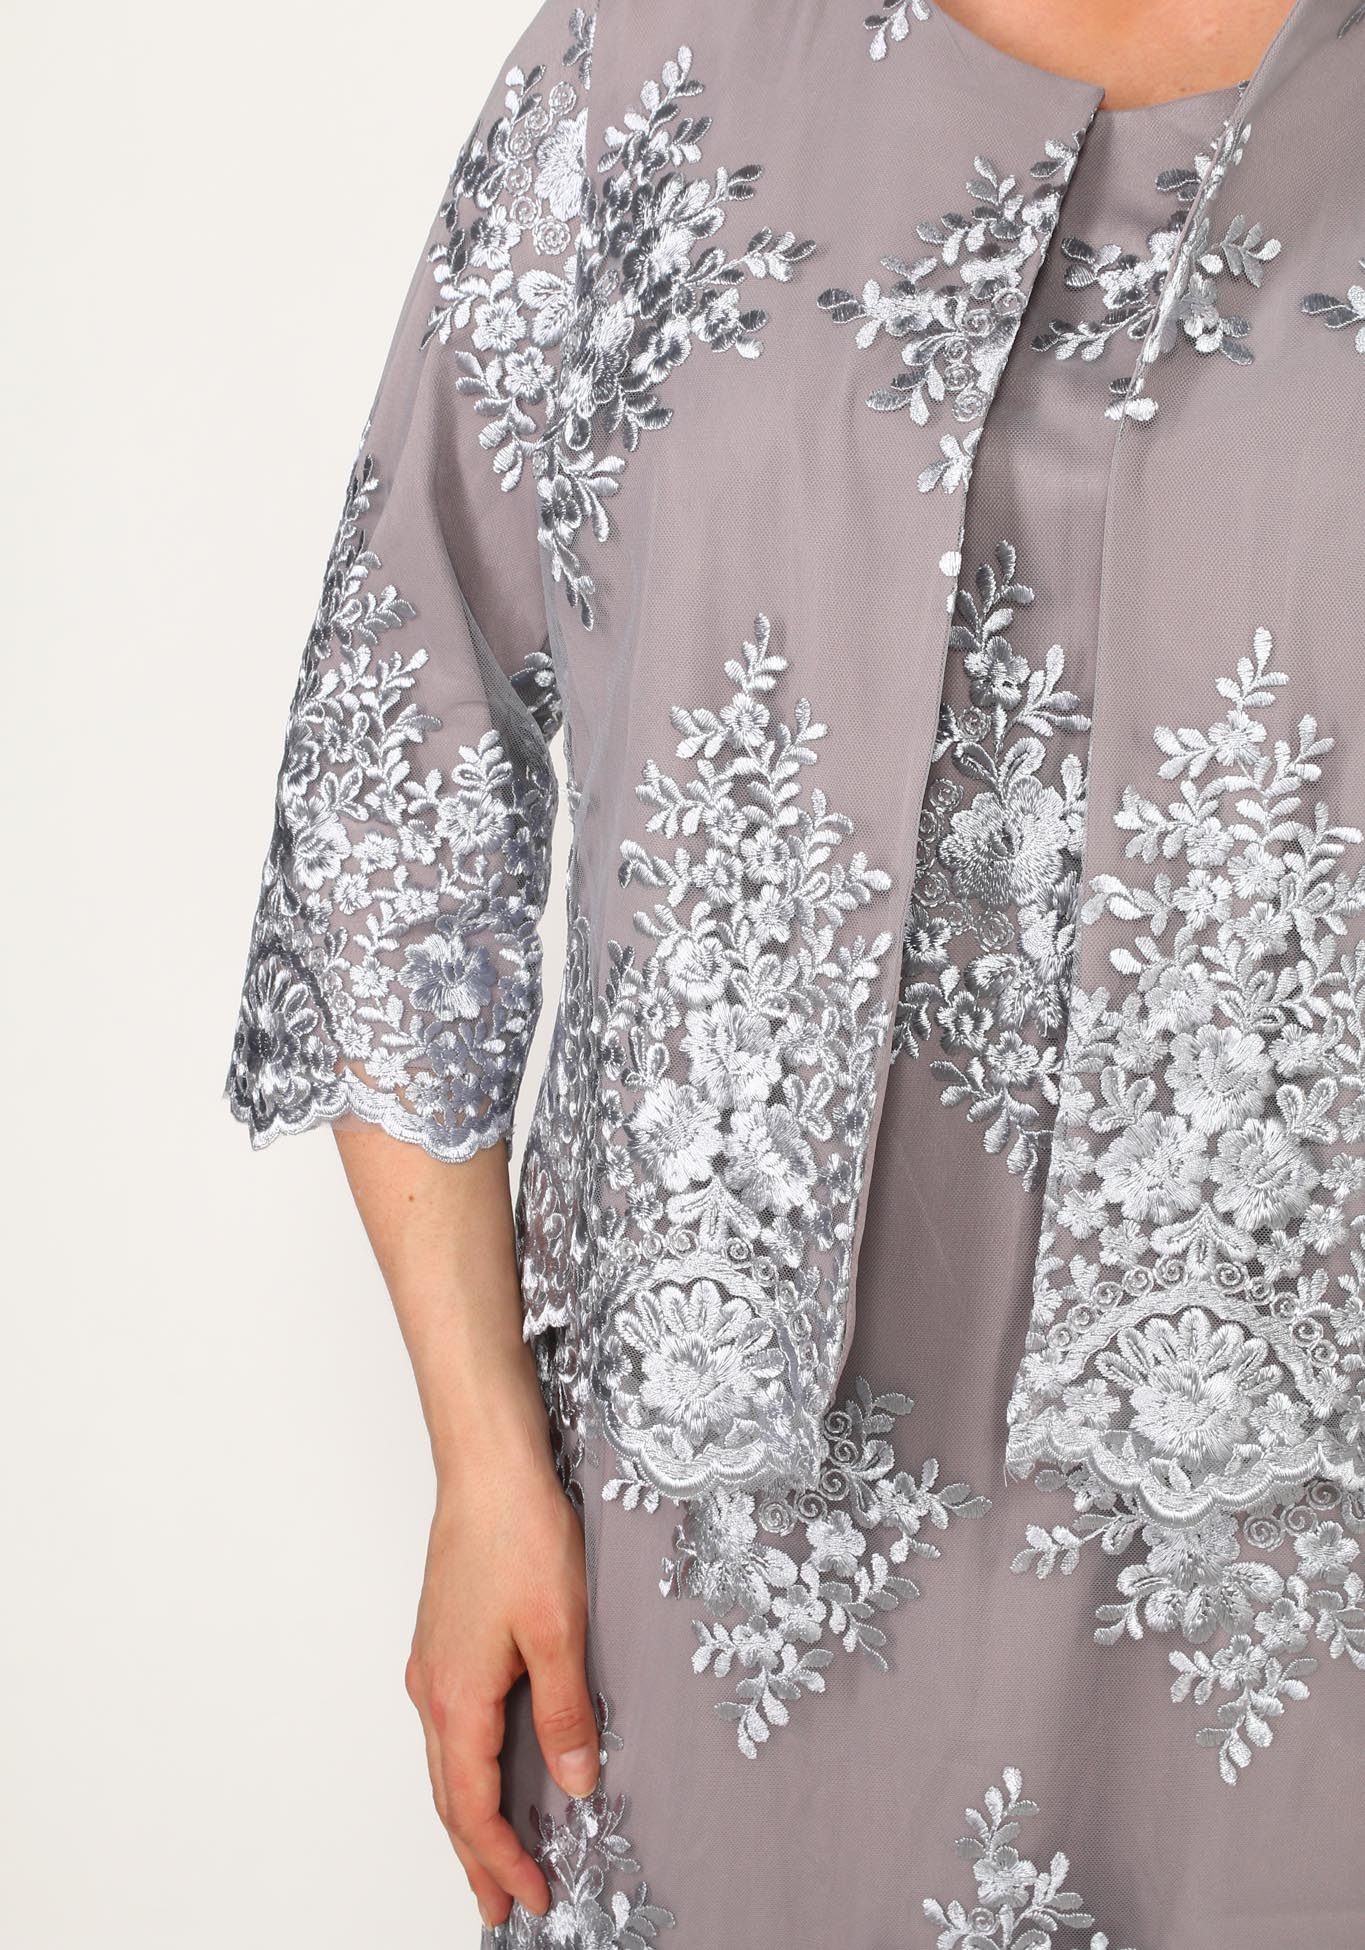 Костюм кружевной: платье и жакет Bel Fiore, размер 54, цвет фиолетовый - фото 7